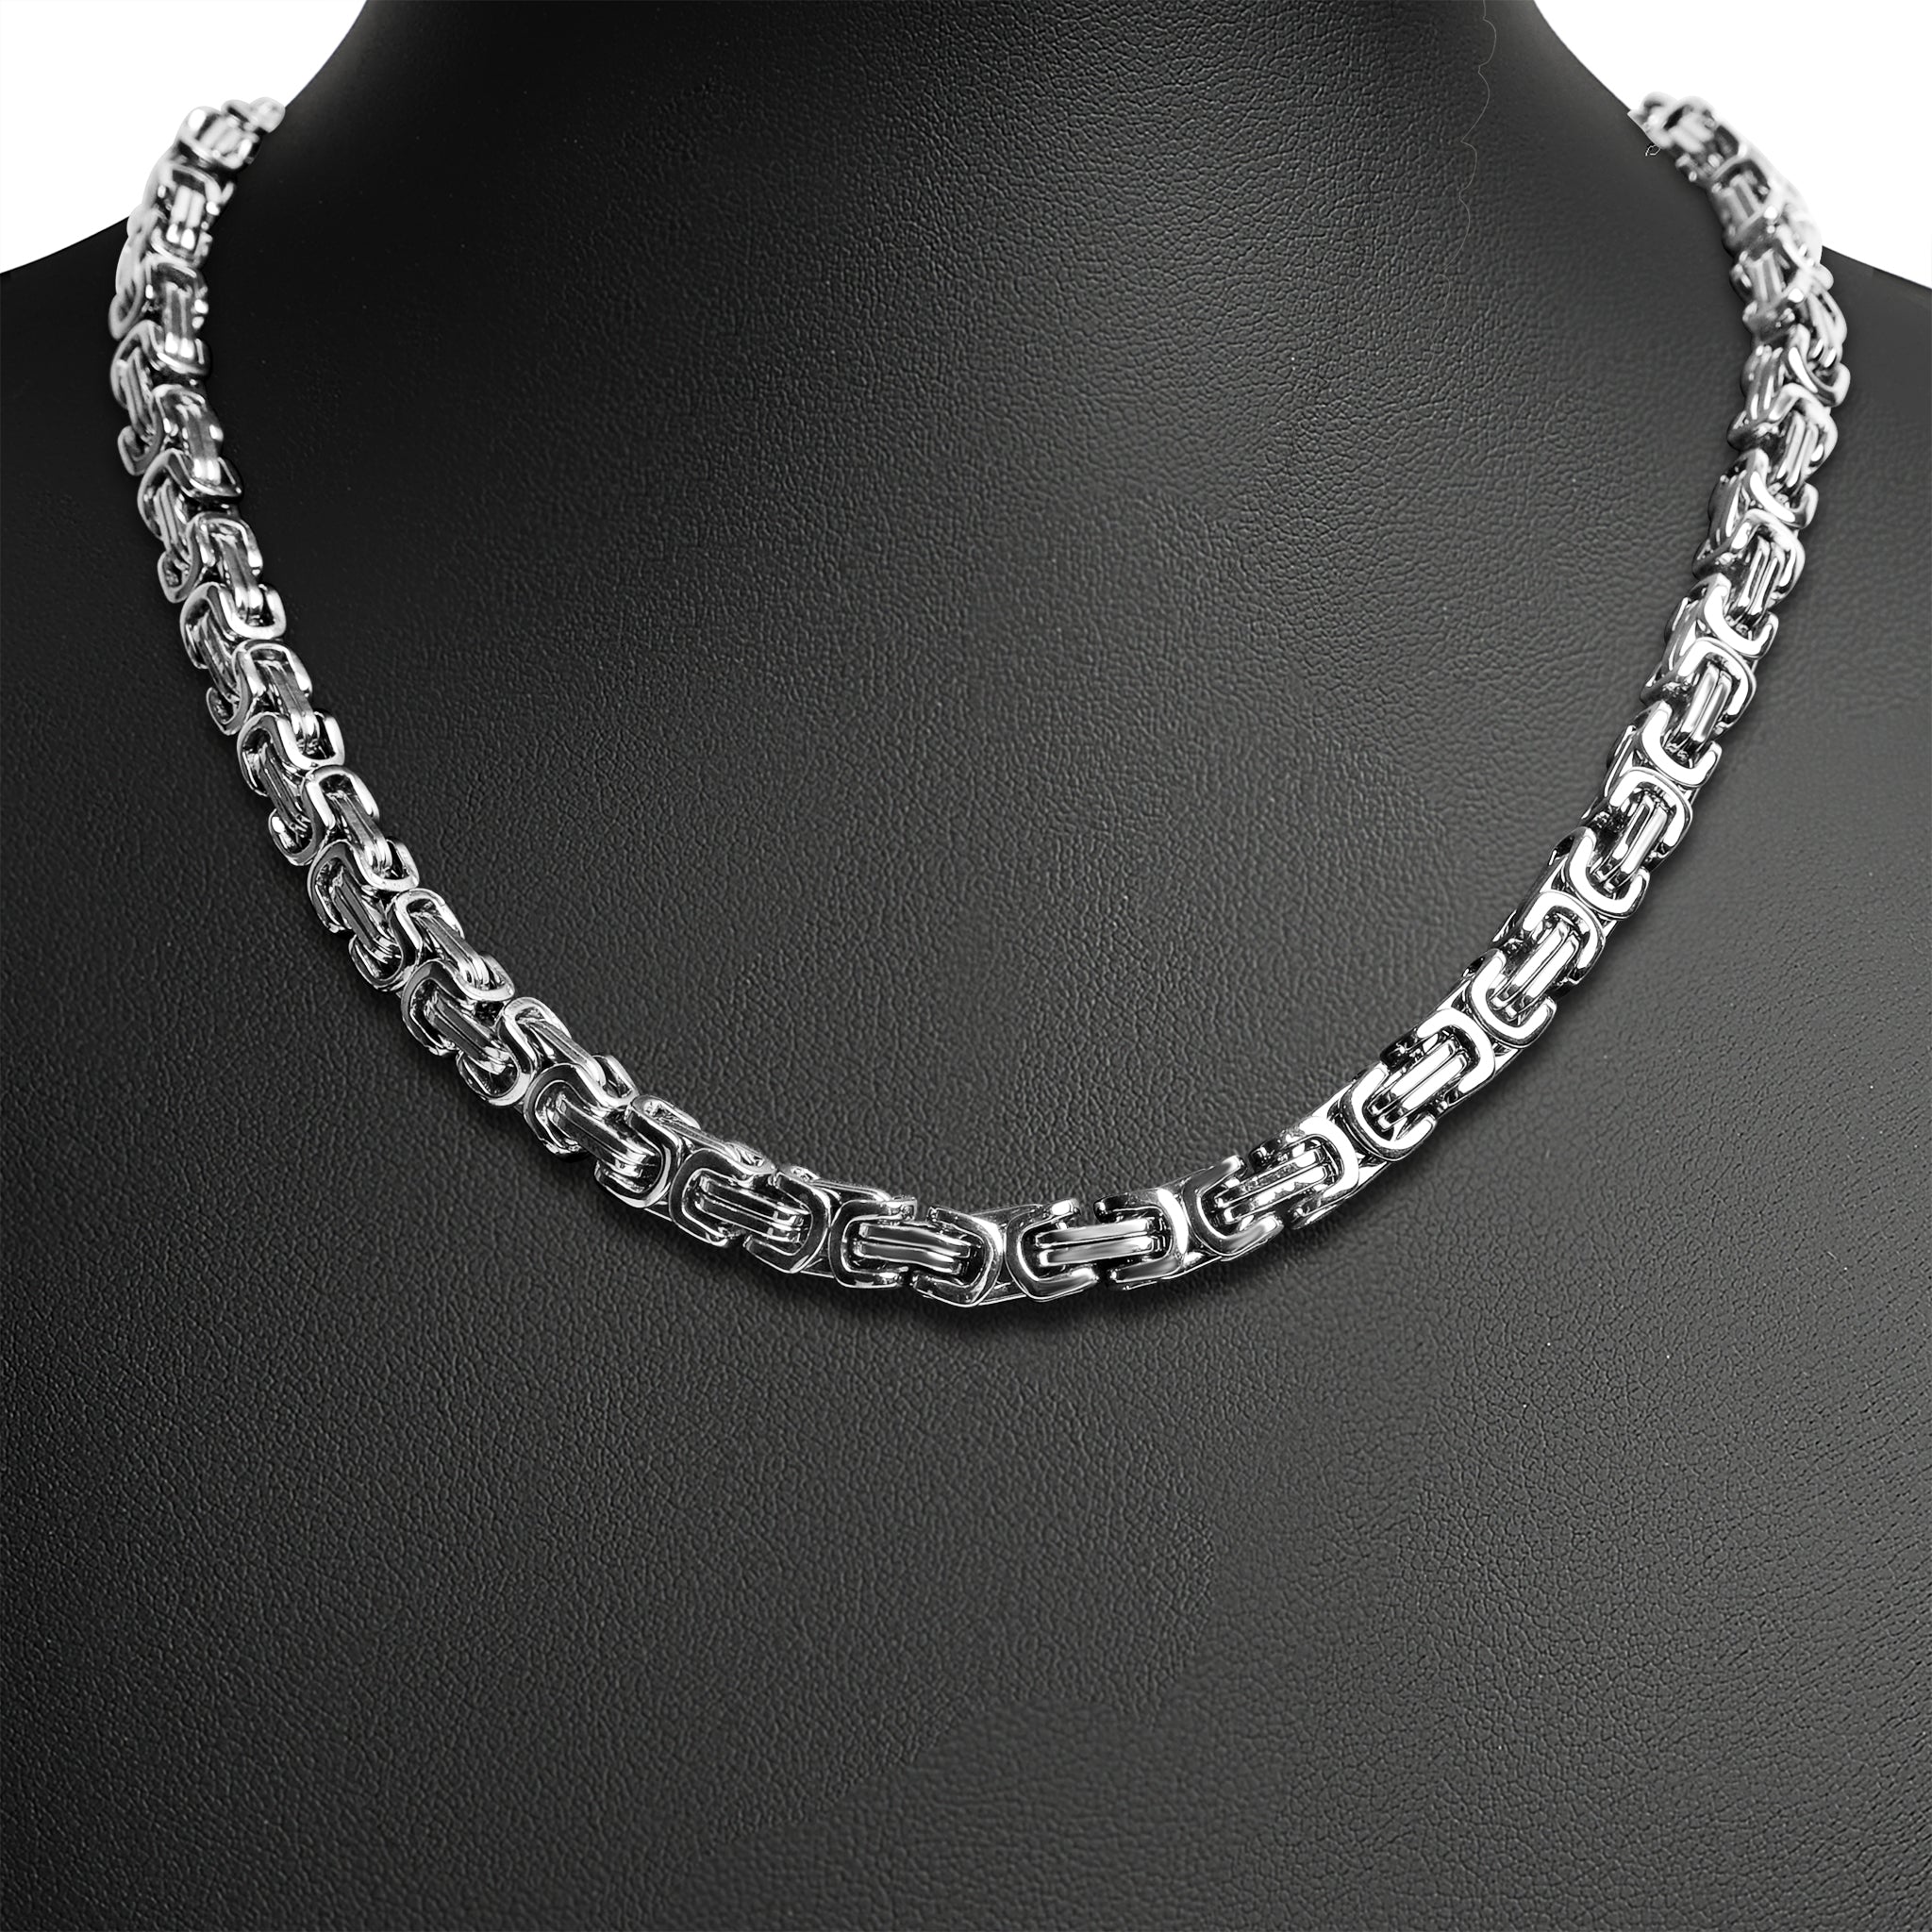 ABOOFAN 2pcs 2 Jewelry Chain Metal Necklace Chains Stainless Steel Chains  Necklace Chain Bulk Chains for Jewelry Making Jewelry findings for Making